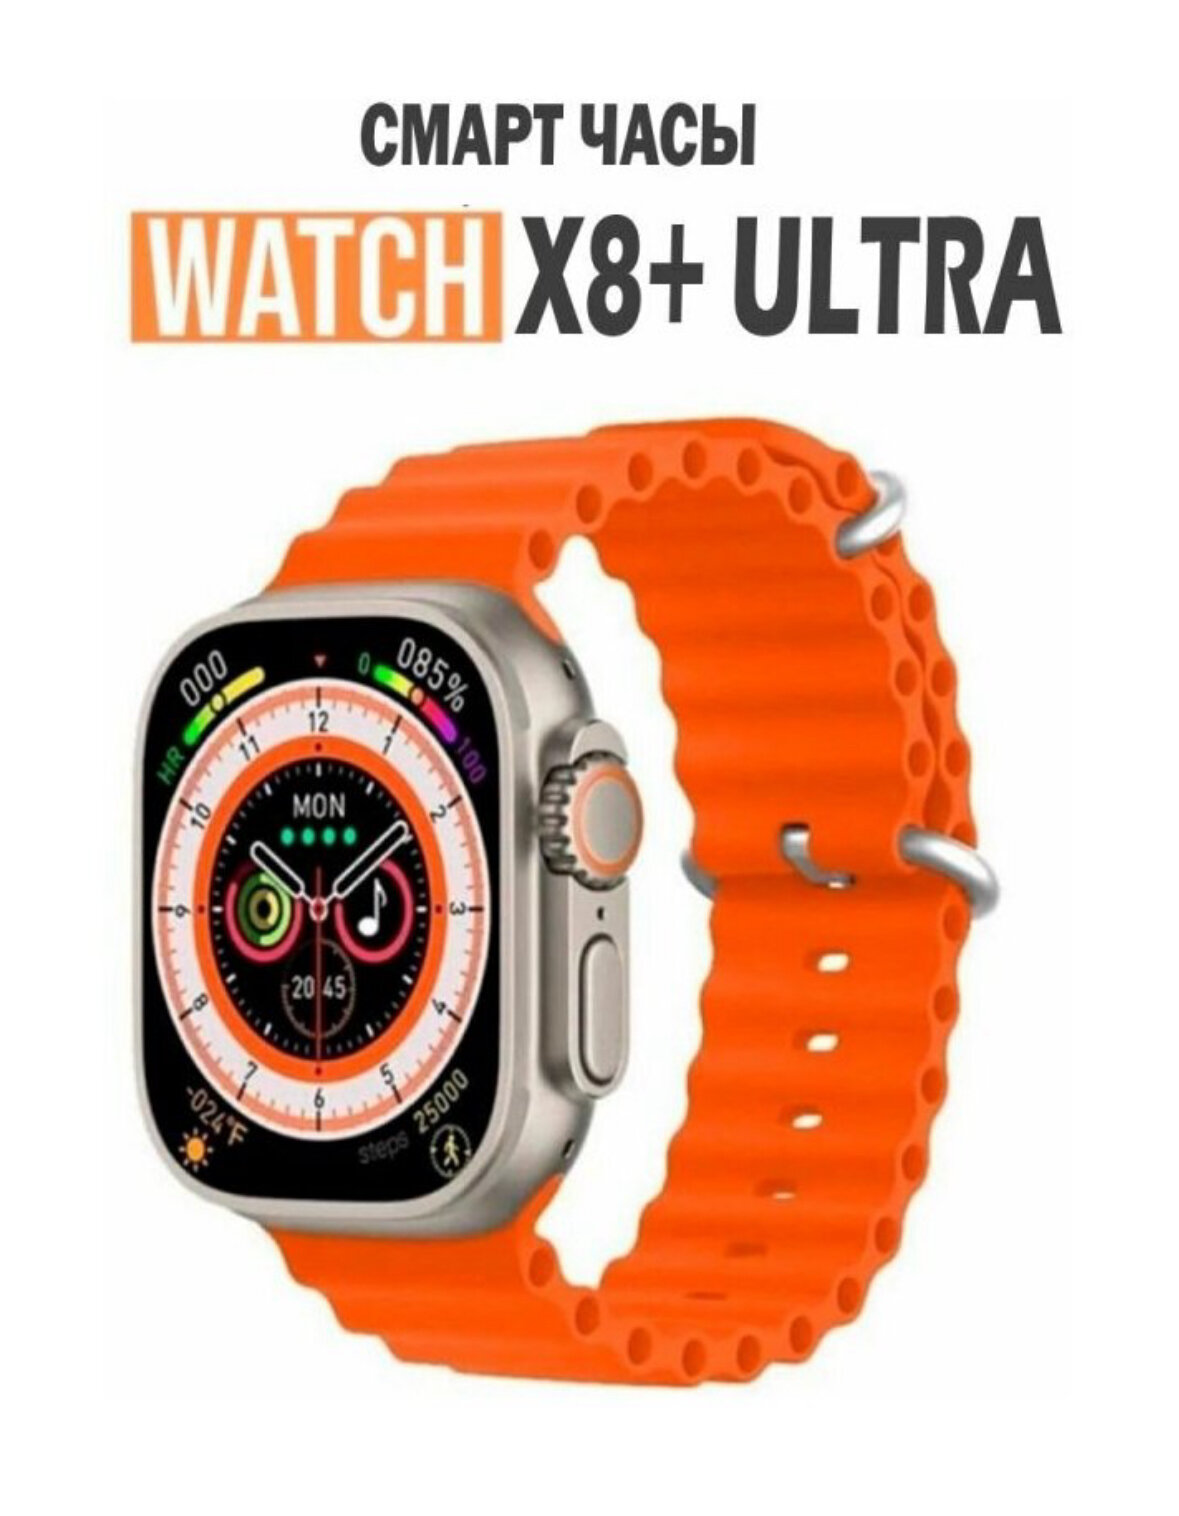 Умные часы Smart X8+ Ultra Series 8 (цвет золотой)звонок , температура тела, калькулятор, беспроводная зарядка, Bluetooth.